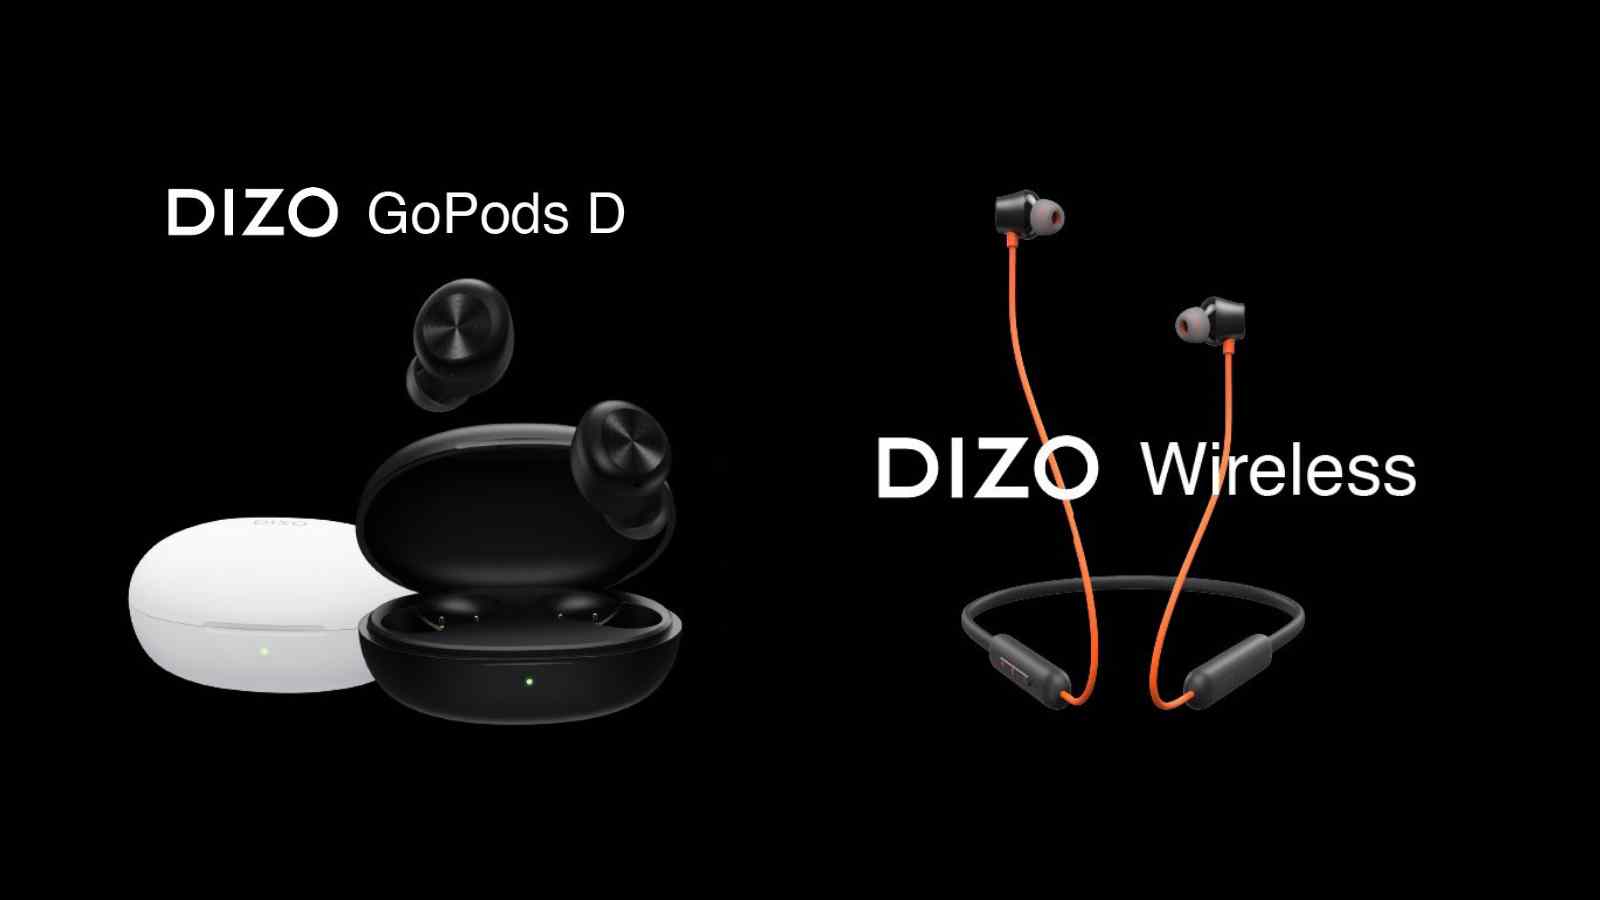 Realme Dizo Go Pods D and Dizo Wireless